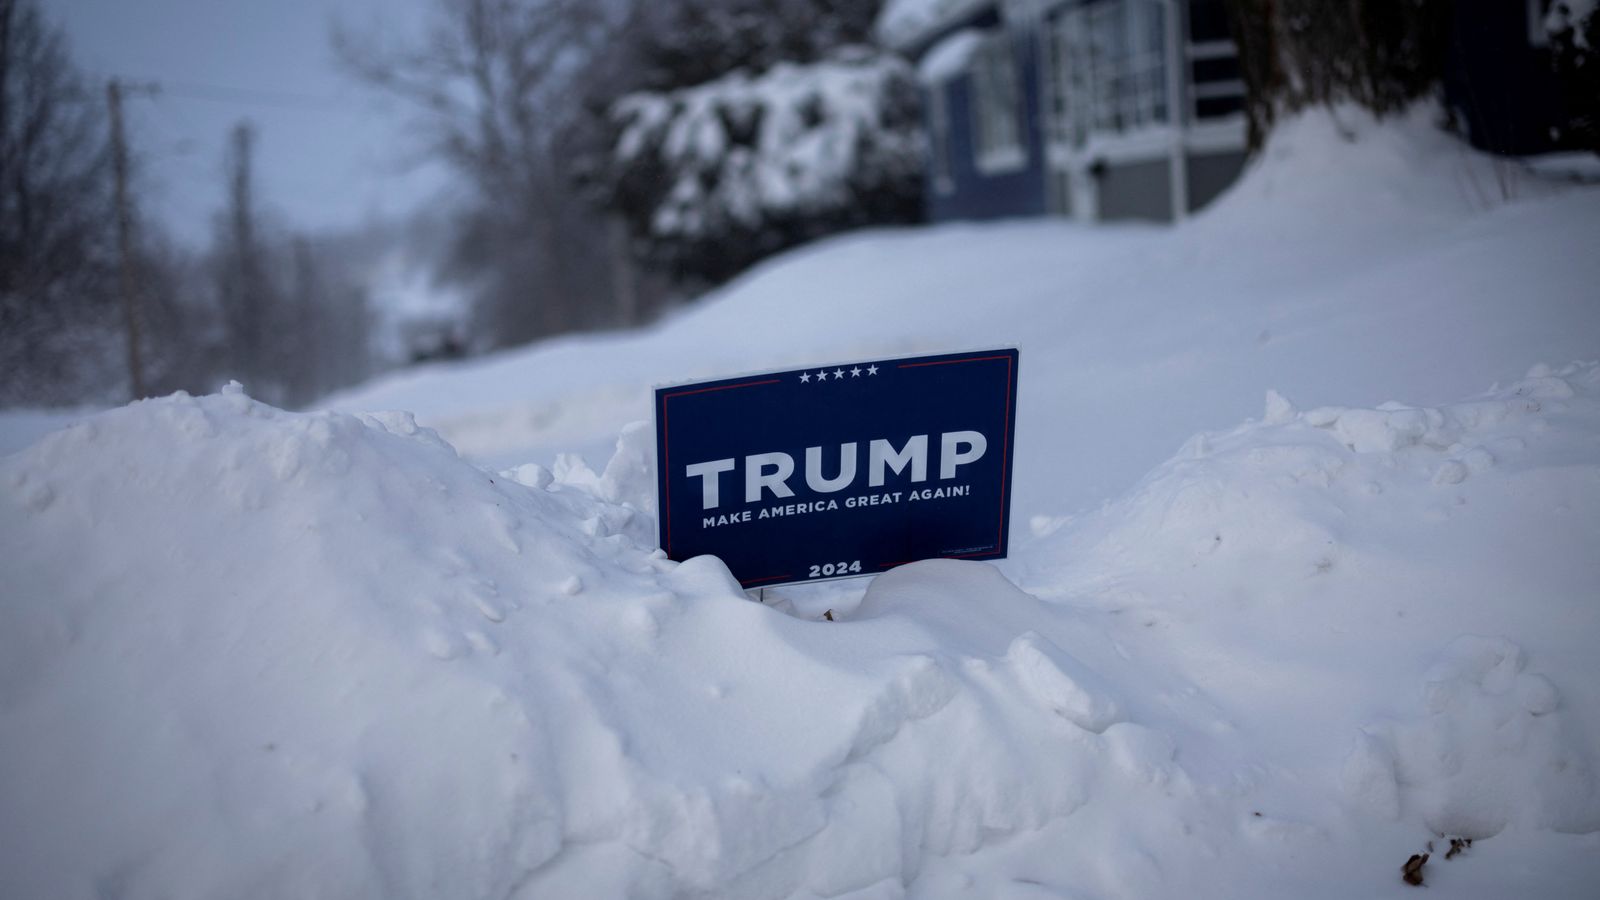 Доналд Тръмп се шегува с гласоподавателите в Айова, че смъртта си „заслужава“ - тъй като се прогнозира, че температурите в САЩ ще паднат до -30C